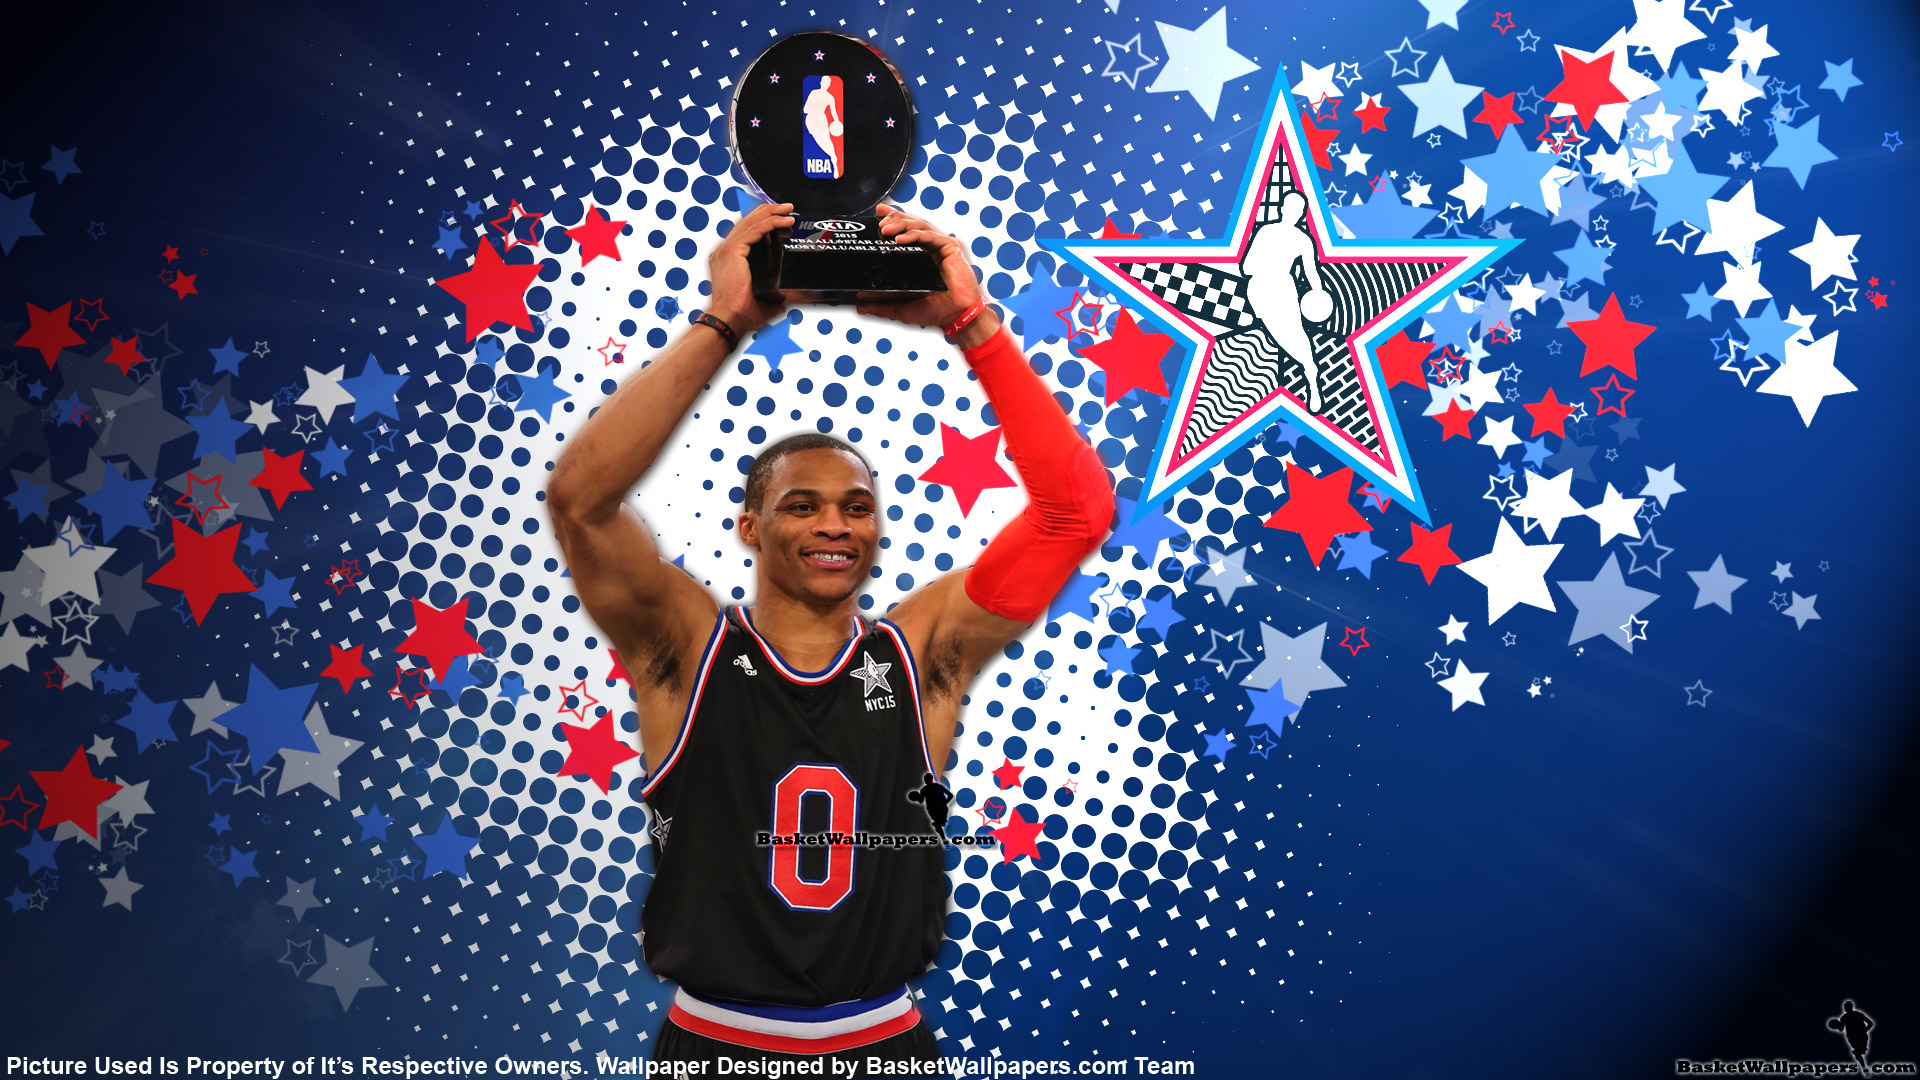 fondo de pantalla de russell westbrook,jugador de baloncesto,concurso de talentos,super bowl,ventilador,movimientos de baloncesto